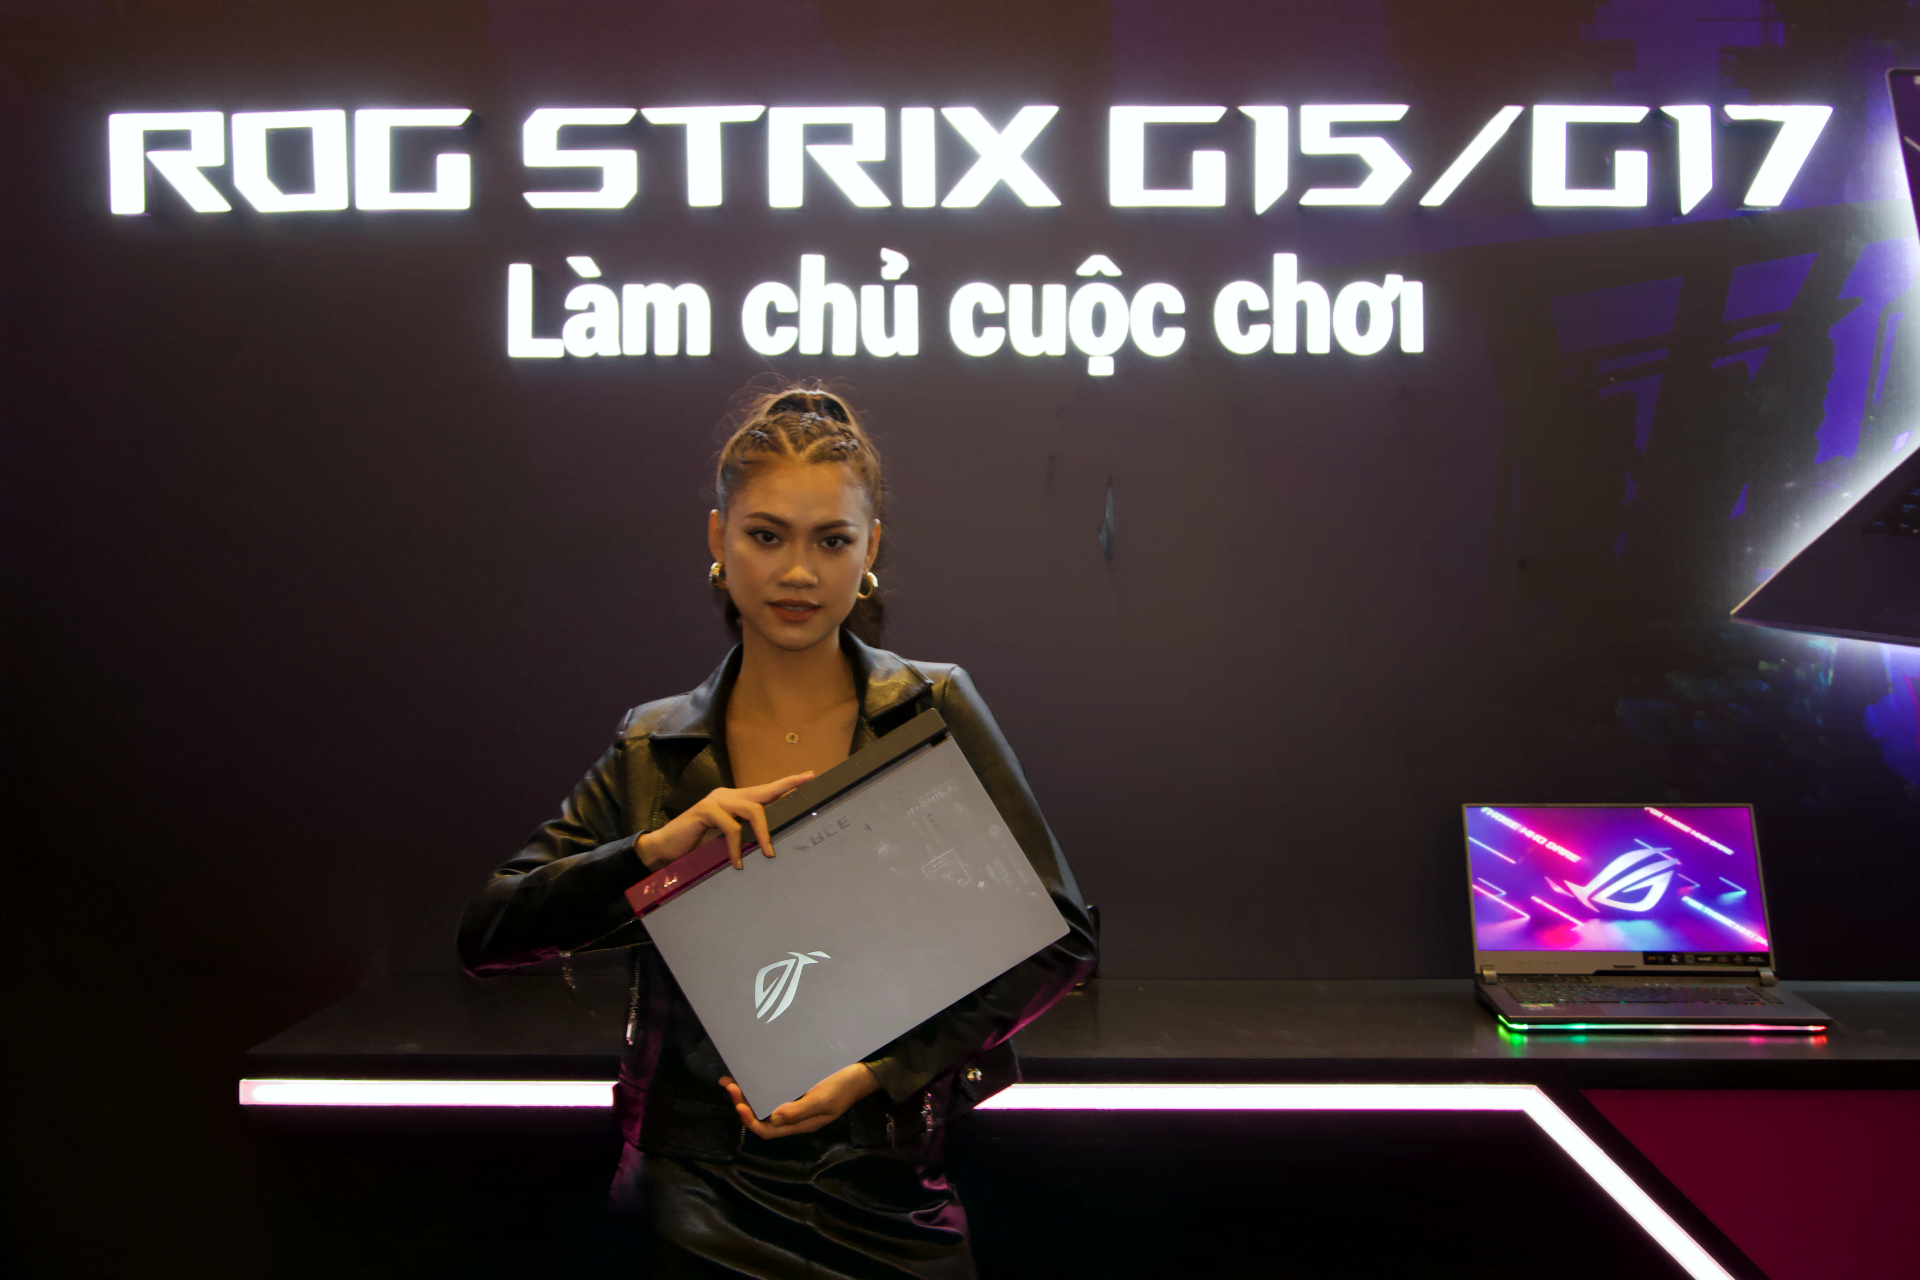 [PR] ASUS ROG công bố loạt sản phẩm laptop mới nền tảng AMD Ryzen 6000 Series tại thị trường Việt Nam - Image 13